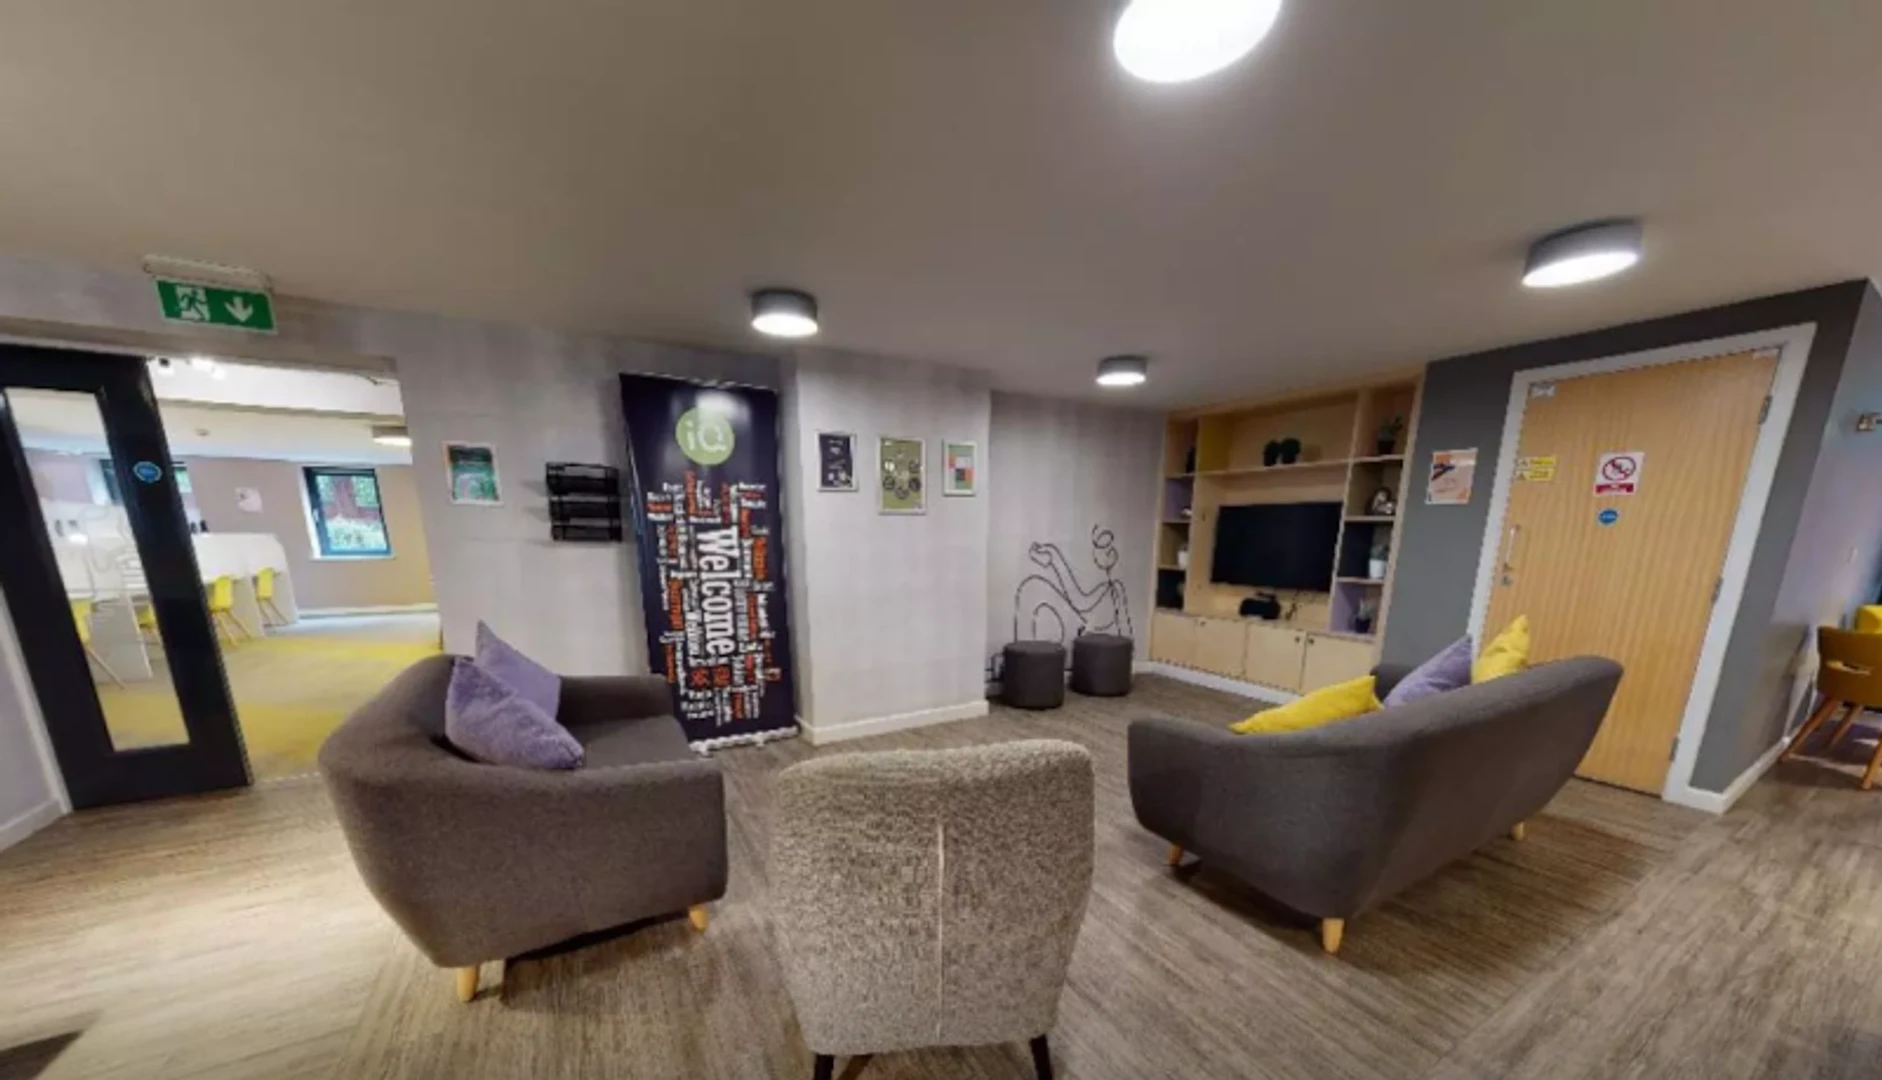 Alquiler de habitación en piso compartido en Leeds